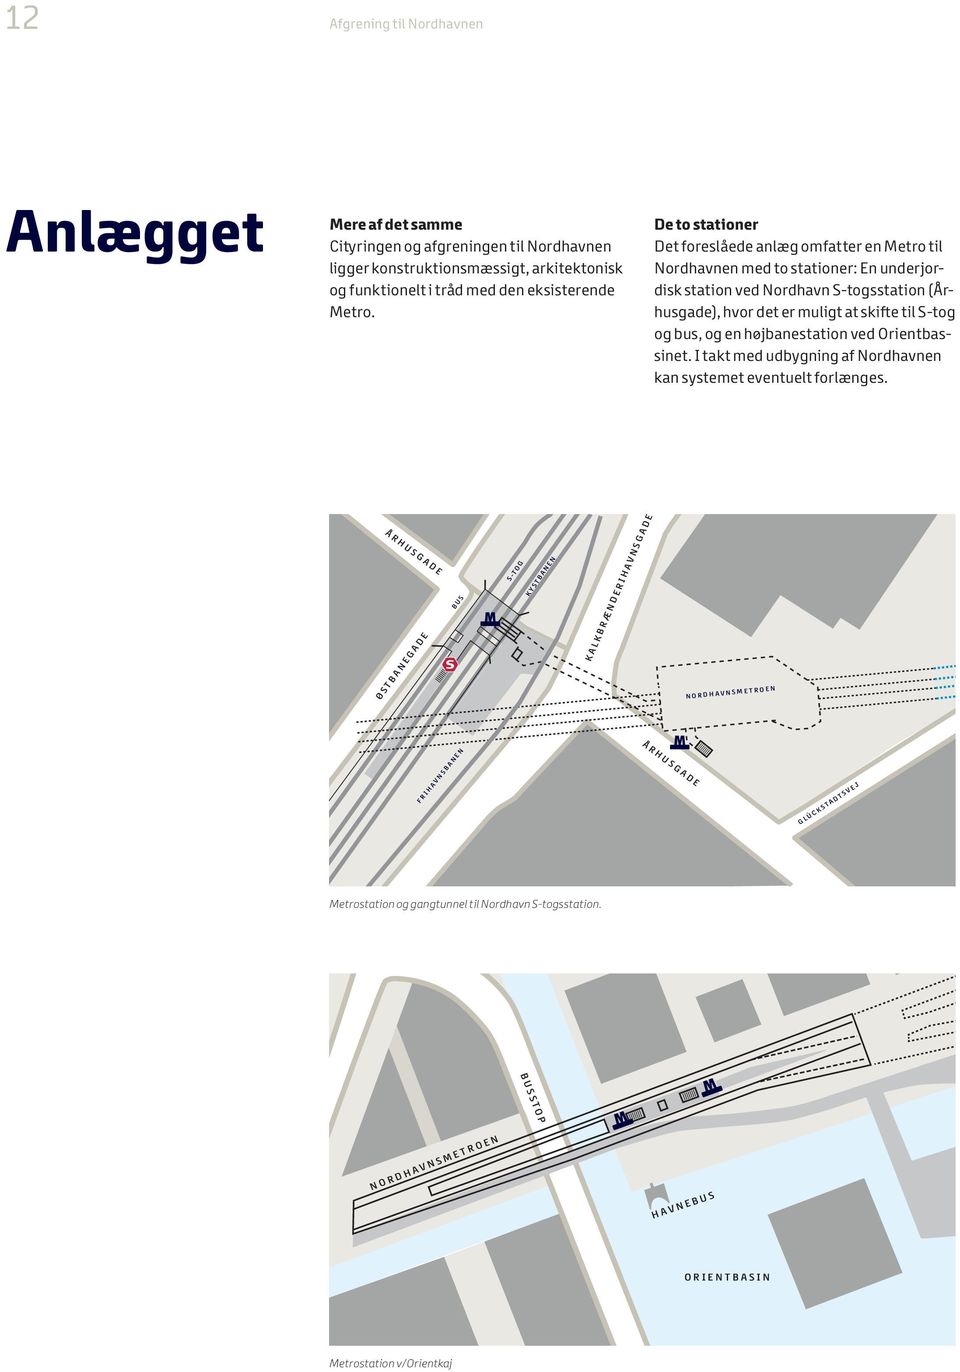 De to stationer Det foreslåede anlæg omfatter en Metro til Nordhavnen med to stationer: En underjordisk station ved Nordhavn S-togsstation (Århusgade), hvor det er muligt at skifte til